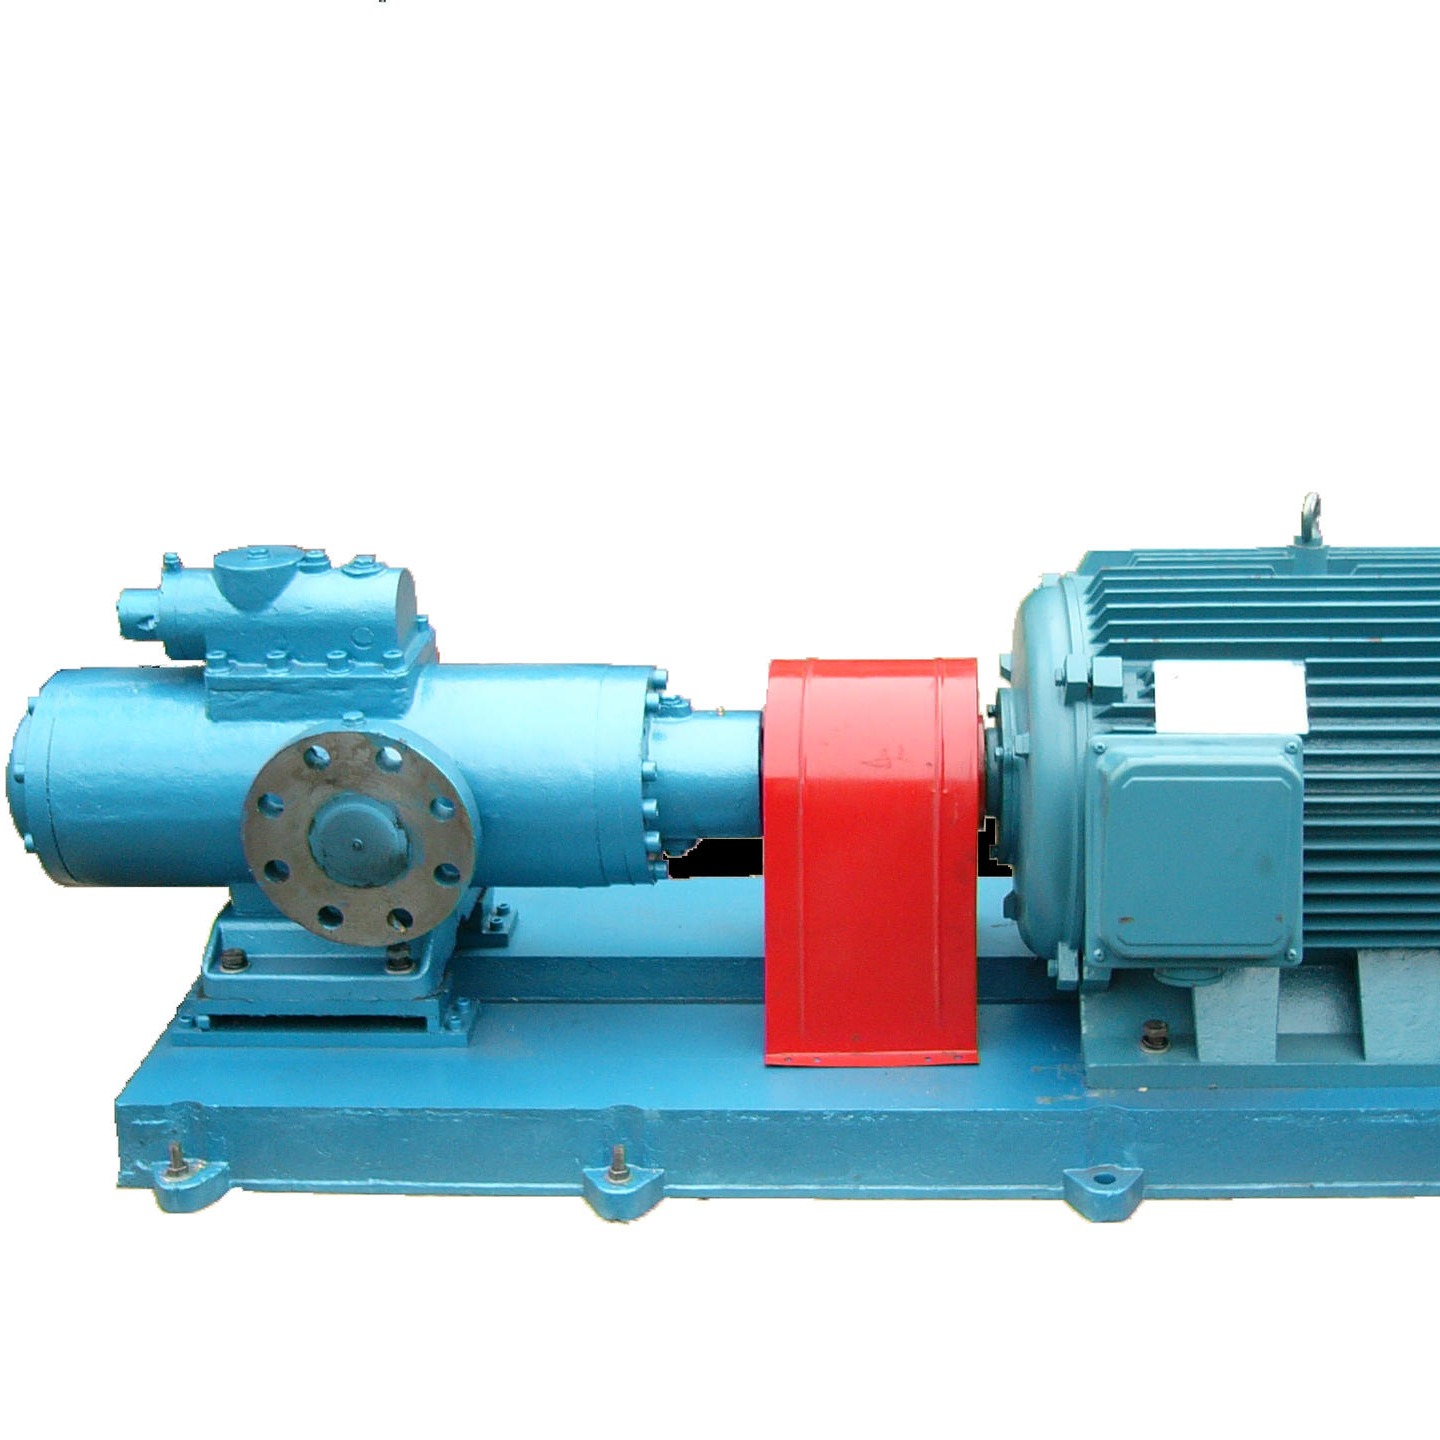 三螺杆泵  天津远东 高压三螺杆泵 SMH660R46U12.1W28 重油点火系统油泵  厂家定制